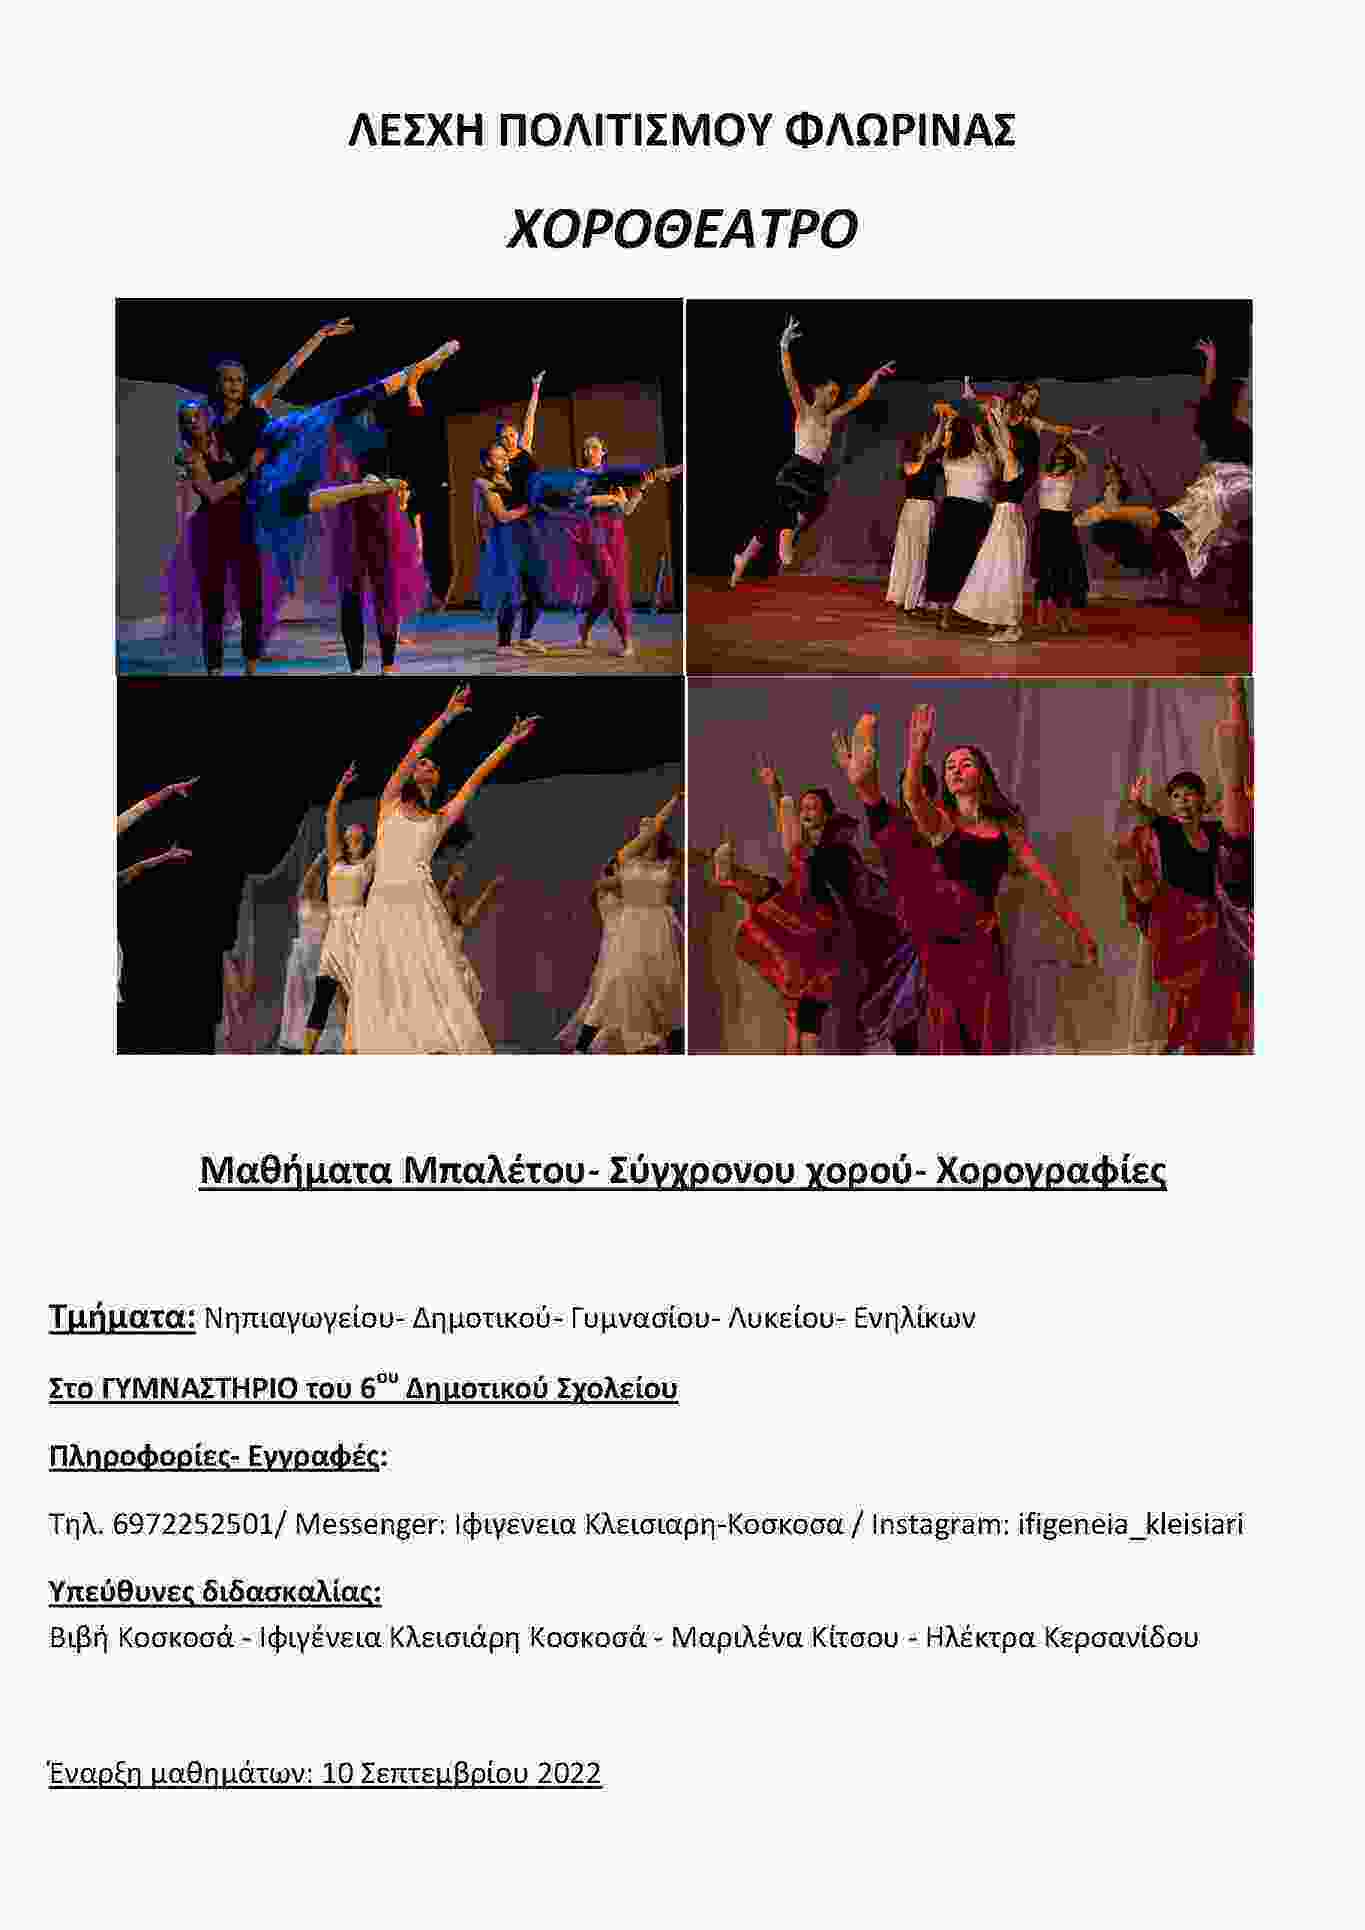 Μαθήματα Μπαλέτου - Σύγχρονου χορού - Χορογραφίες από την ΛΕΣΧΗ ΠΟΛΙΤΙΣΜΟΥ ΦΛΩΡΙΝΑΣ